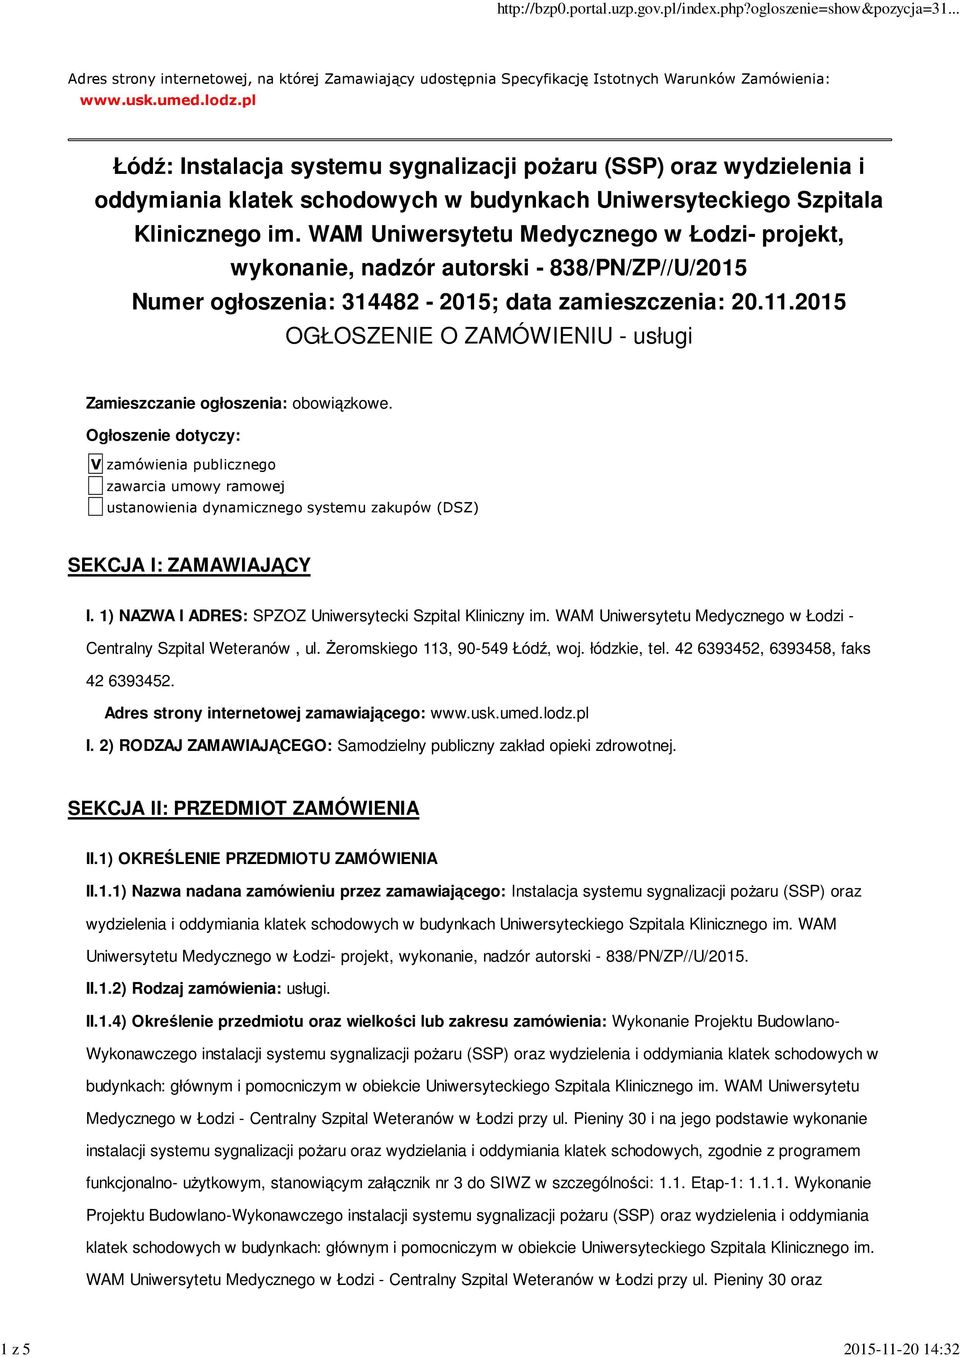 WAM Uniwersytetu Medycznego w Łodzi- projekt, wykonanie, nadzór autorski - 838/PN/ZP//U/2015 Numer ogłoszenia: 314482-2015; data zamieszczenia: 20.11.